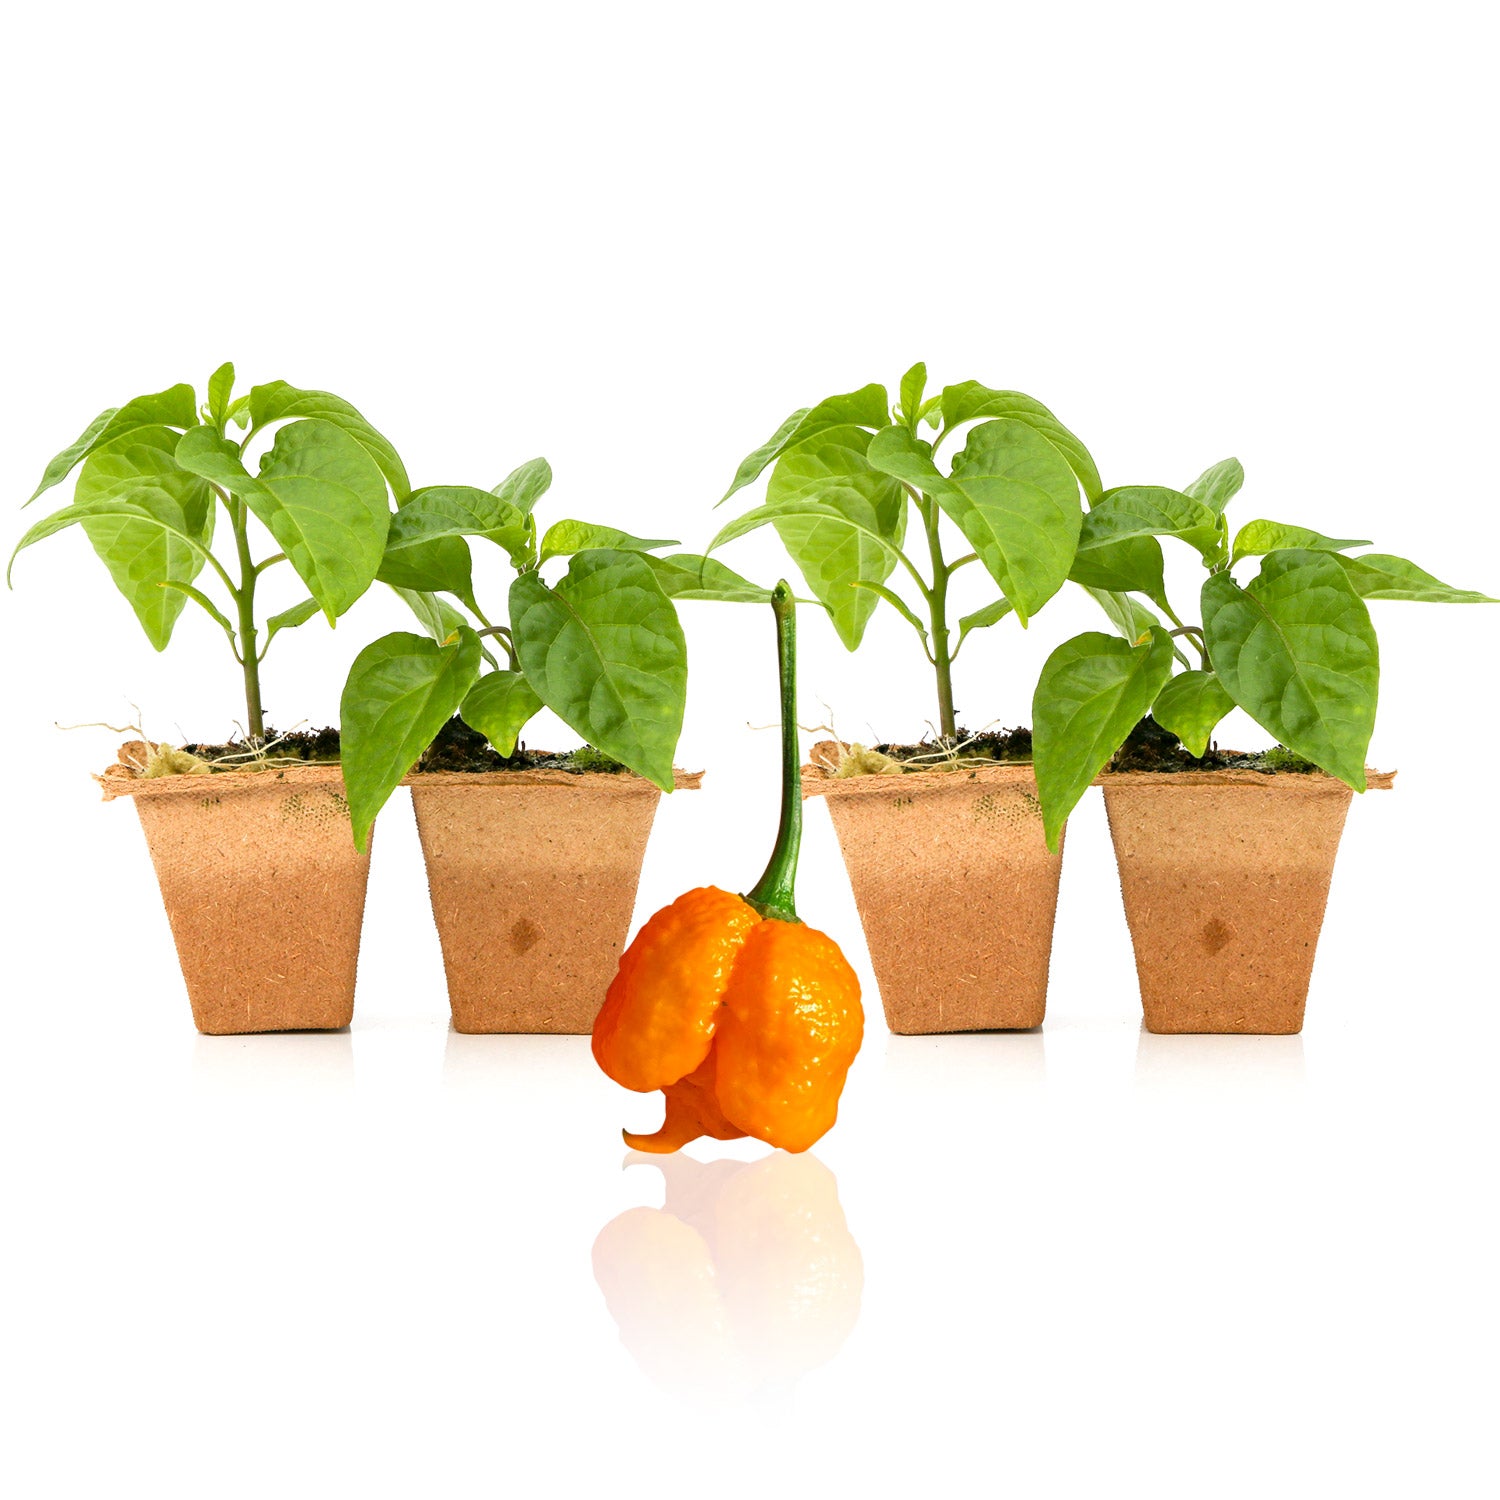 Pepper Joe's Scotch Brain Strain Orange seedlings for sale